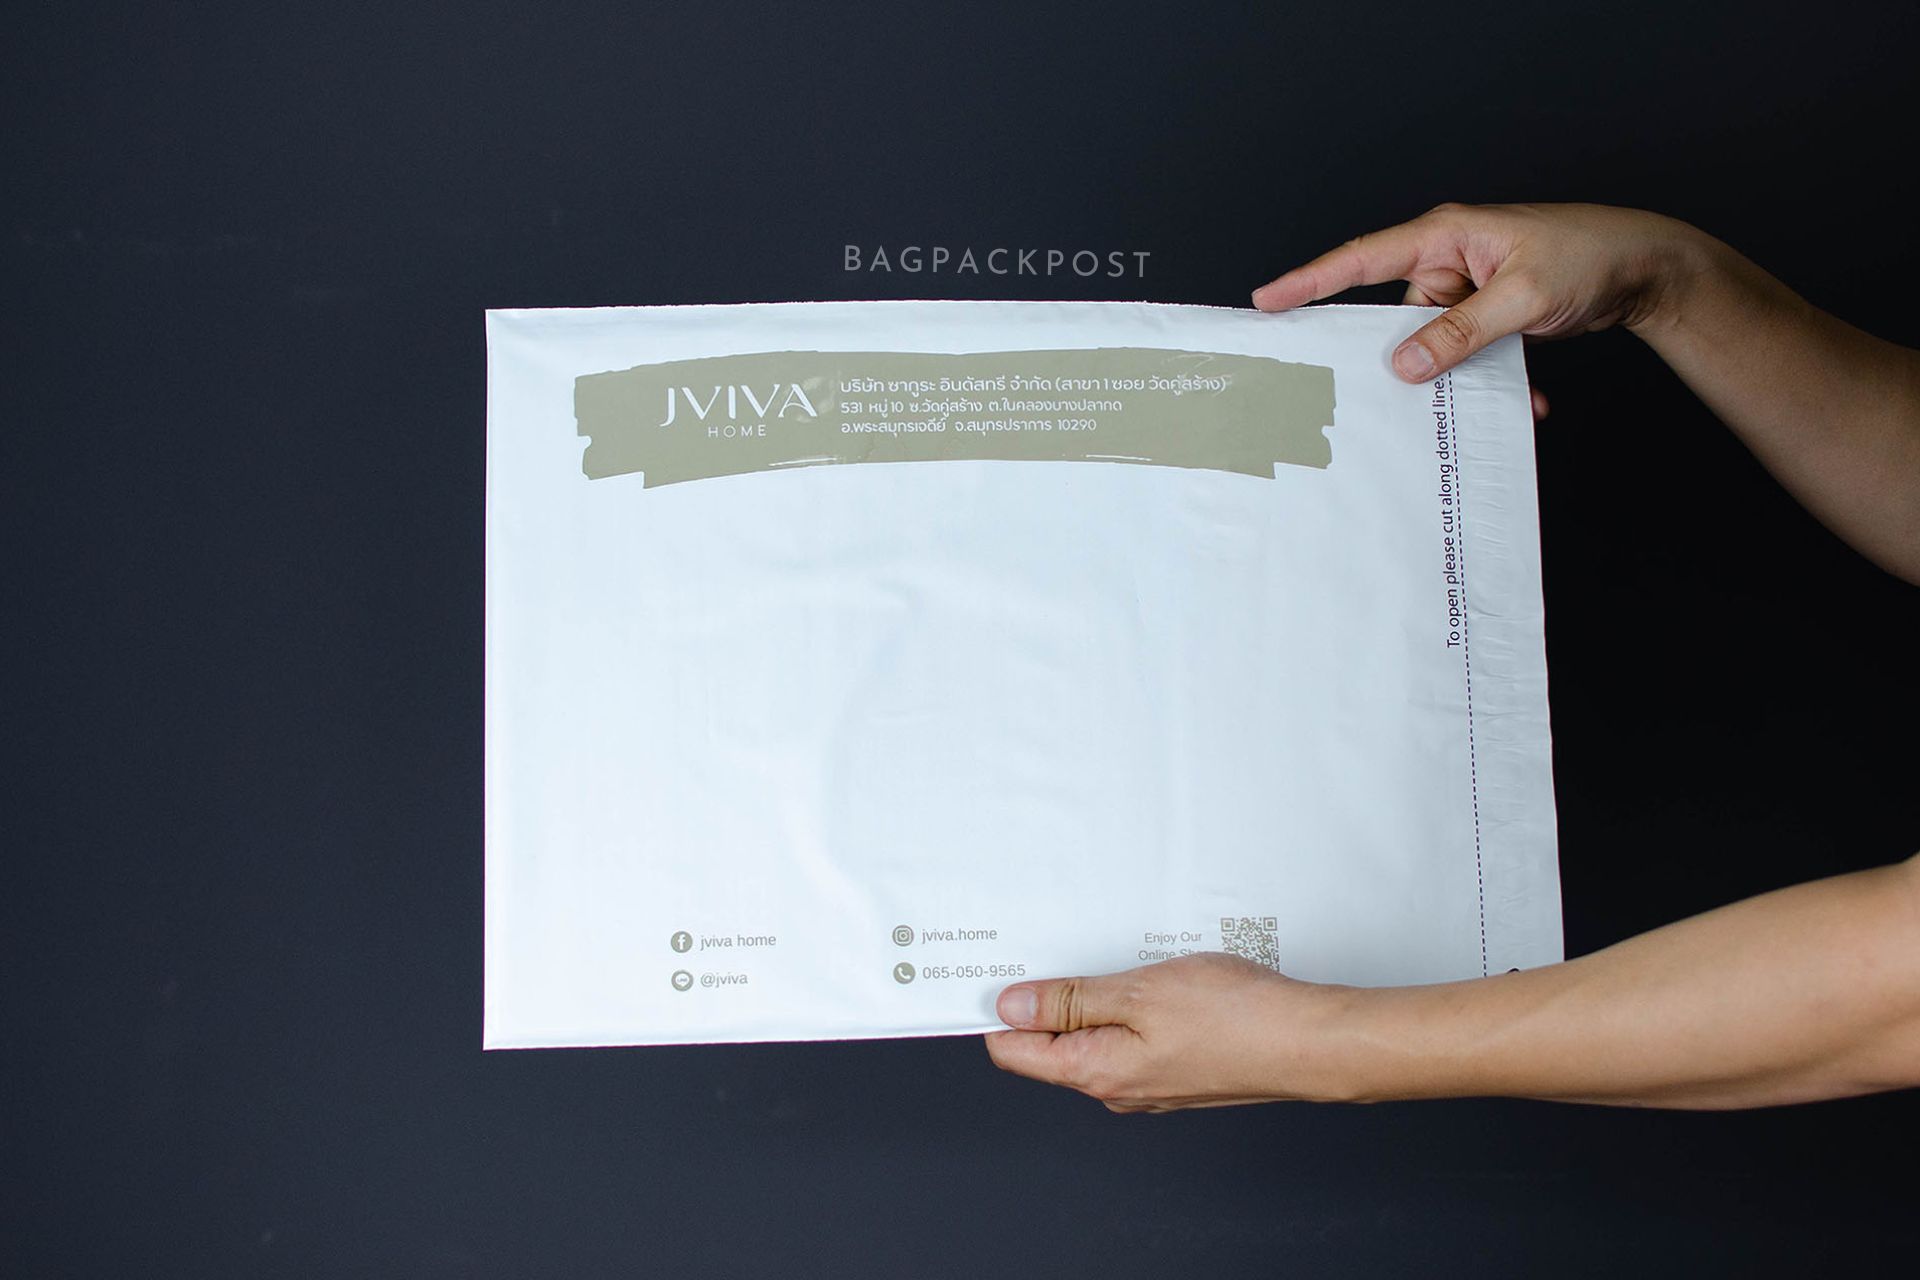 ผลิตถุงไปรษณีย์ ซองไปรษณีย์พิมพ์ลาย jviva ซองไปรษณีย์สีขาว ถุงไปรษณีย์พิมพ์ลาย 4 BagPackPost